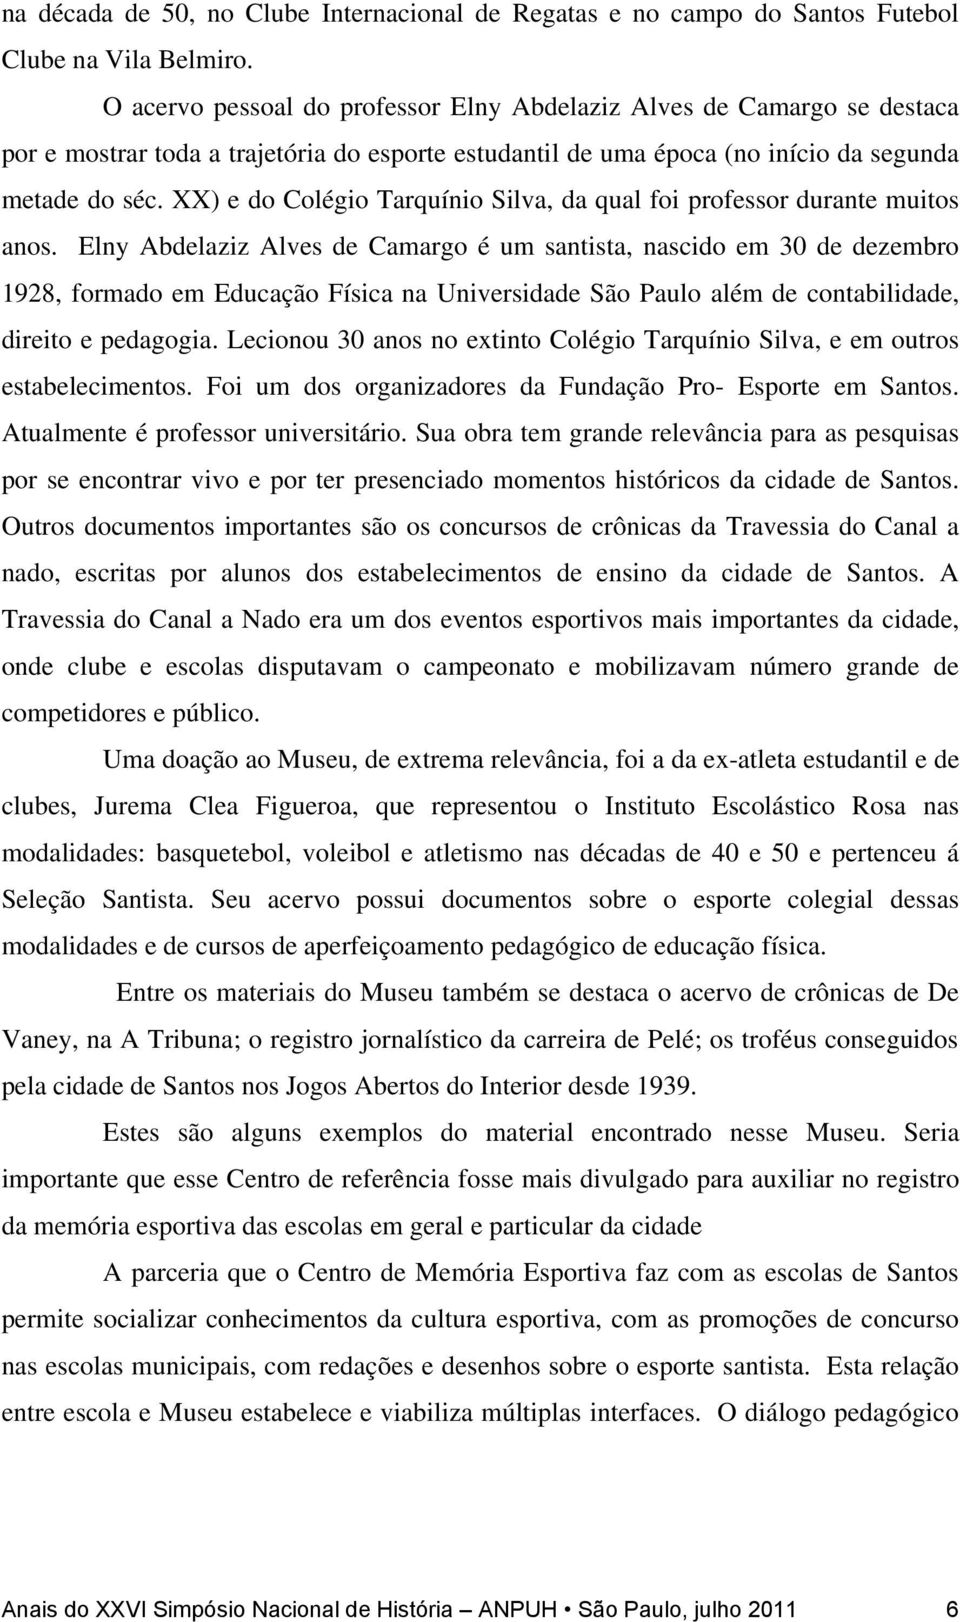 XX) e do Colégio Tarquínio Silva, da qual foi professor durante muitos anos.